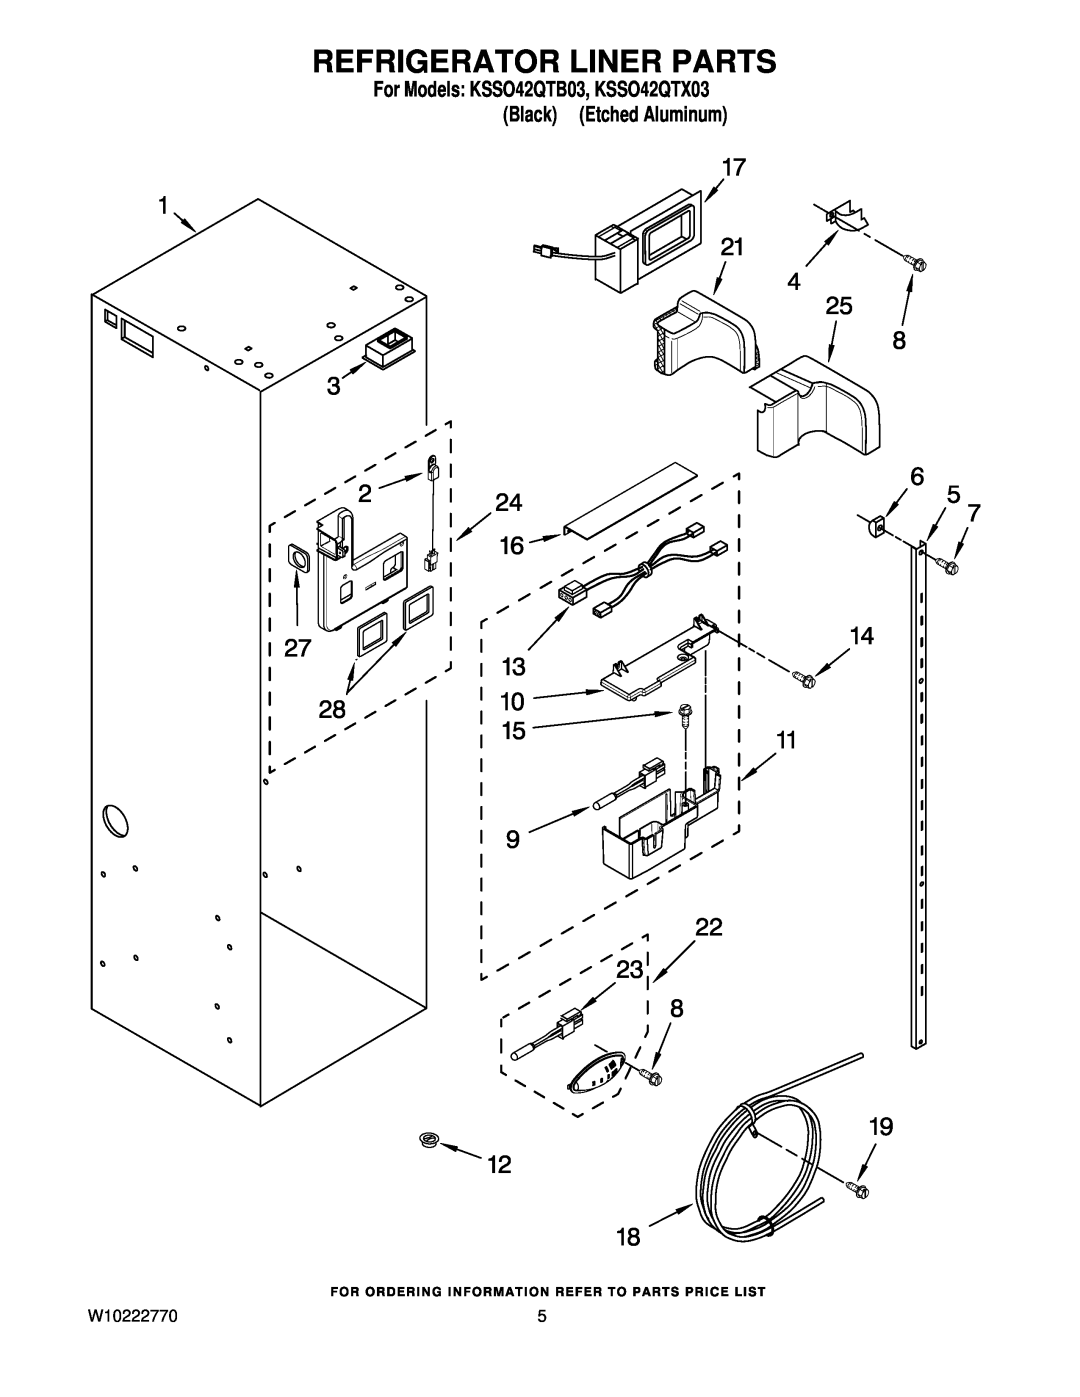 KitchenAid manual Refrigerator Liner Parts, For Models KSSO42QTB03, KSSO42QTX03 Black Etched Aluminum 